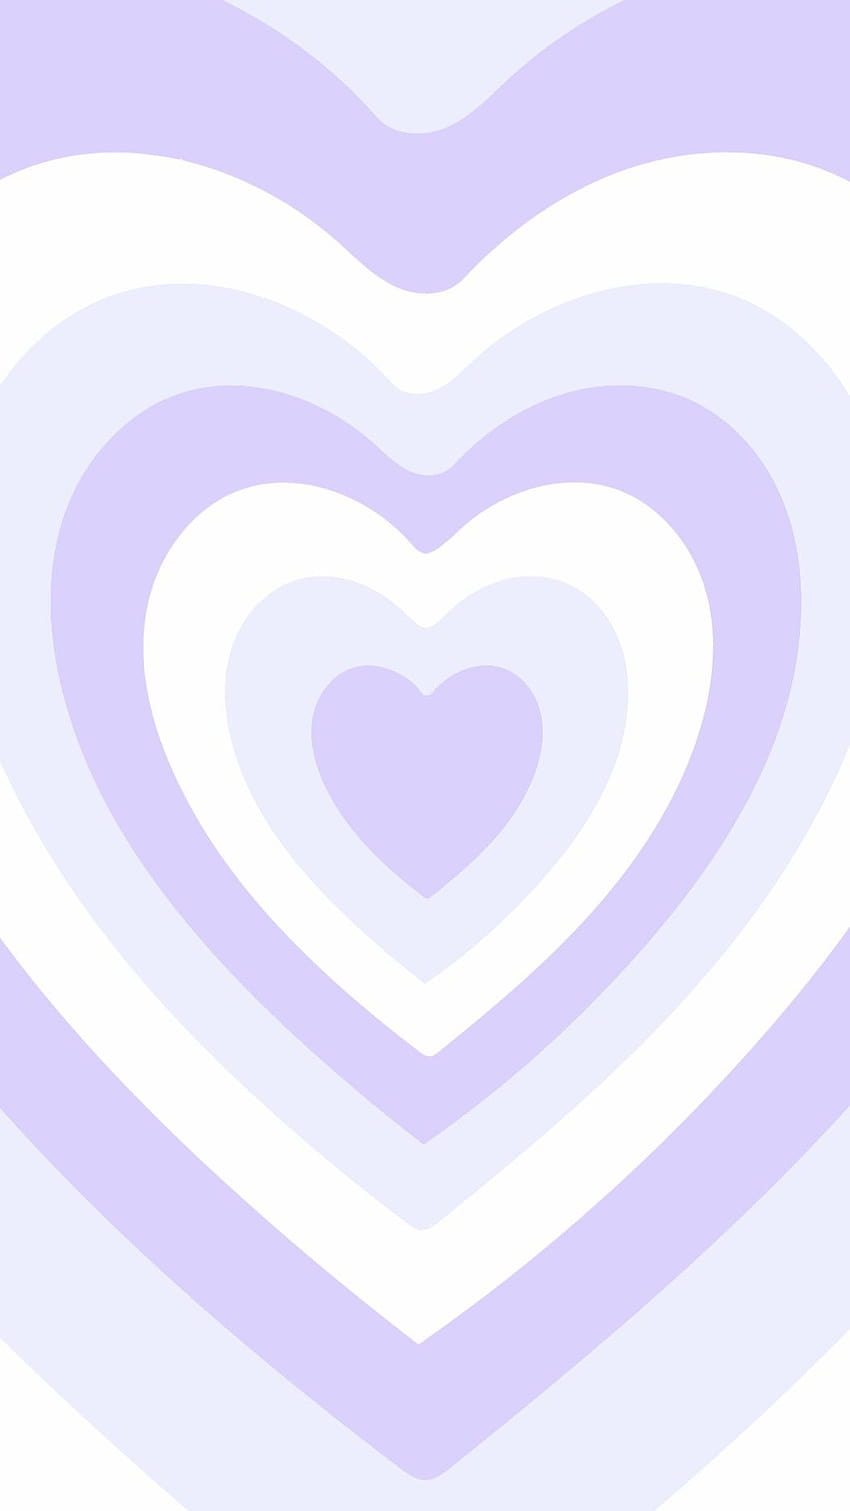 Bạn là một fan hâm mộ của Powerpuff Girls? Những hình nền Lavander Lilac Hearts sẽ khiến bạn cảm thấy thích thú và xúc động với nét đẹp ngọt ngào của cô bé siêu nhân này.